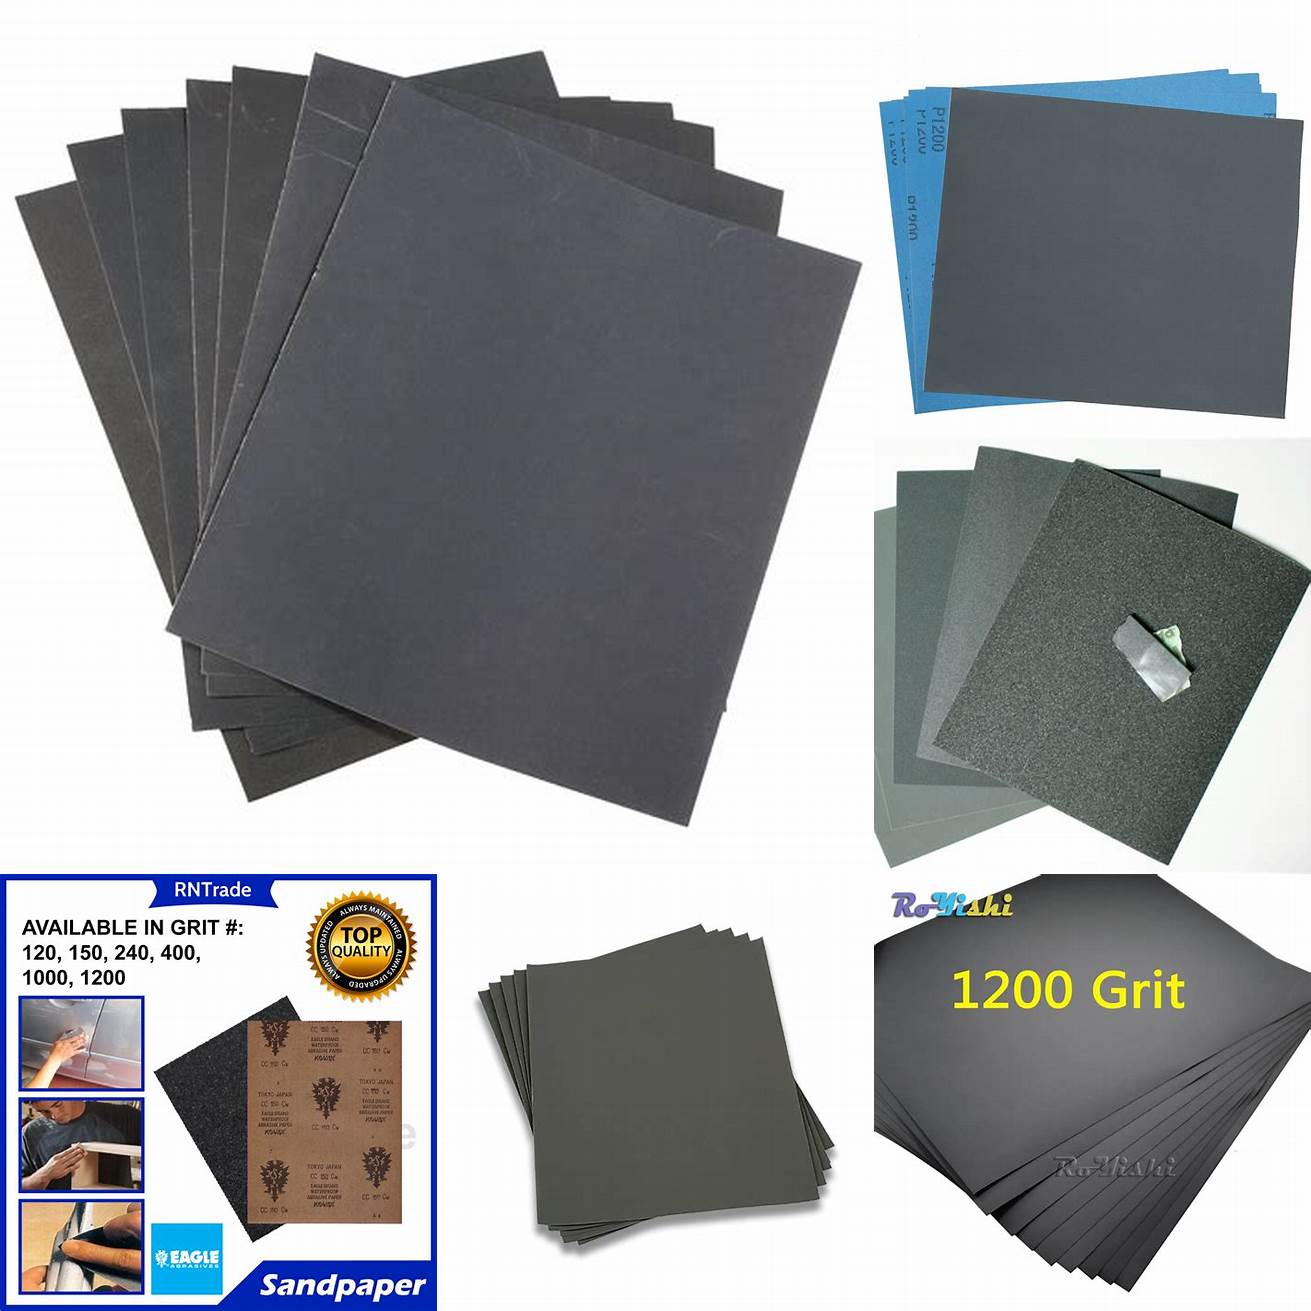 1000 or 1200 Grit Sandpaper